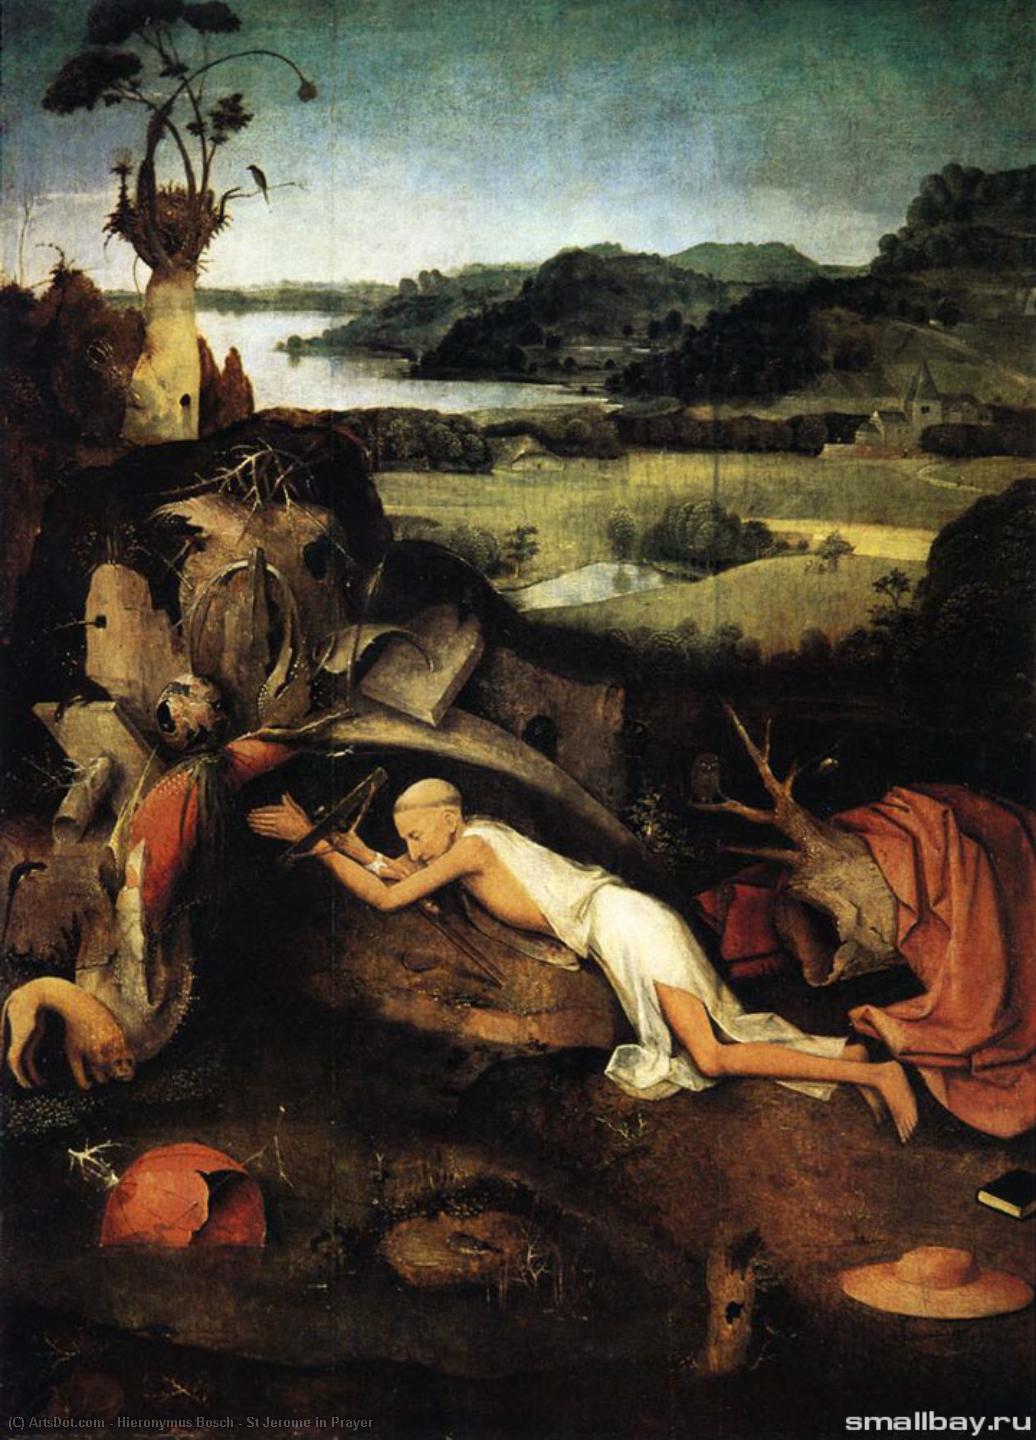 WikiOO.org - Энциклопедия изобразительного искусства - Живопись, Картины  Hieronymus Bosch - святой иероним в  Молитва